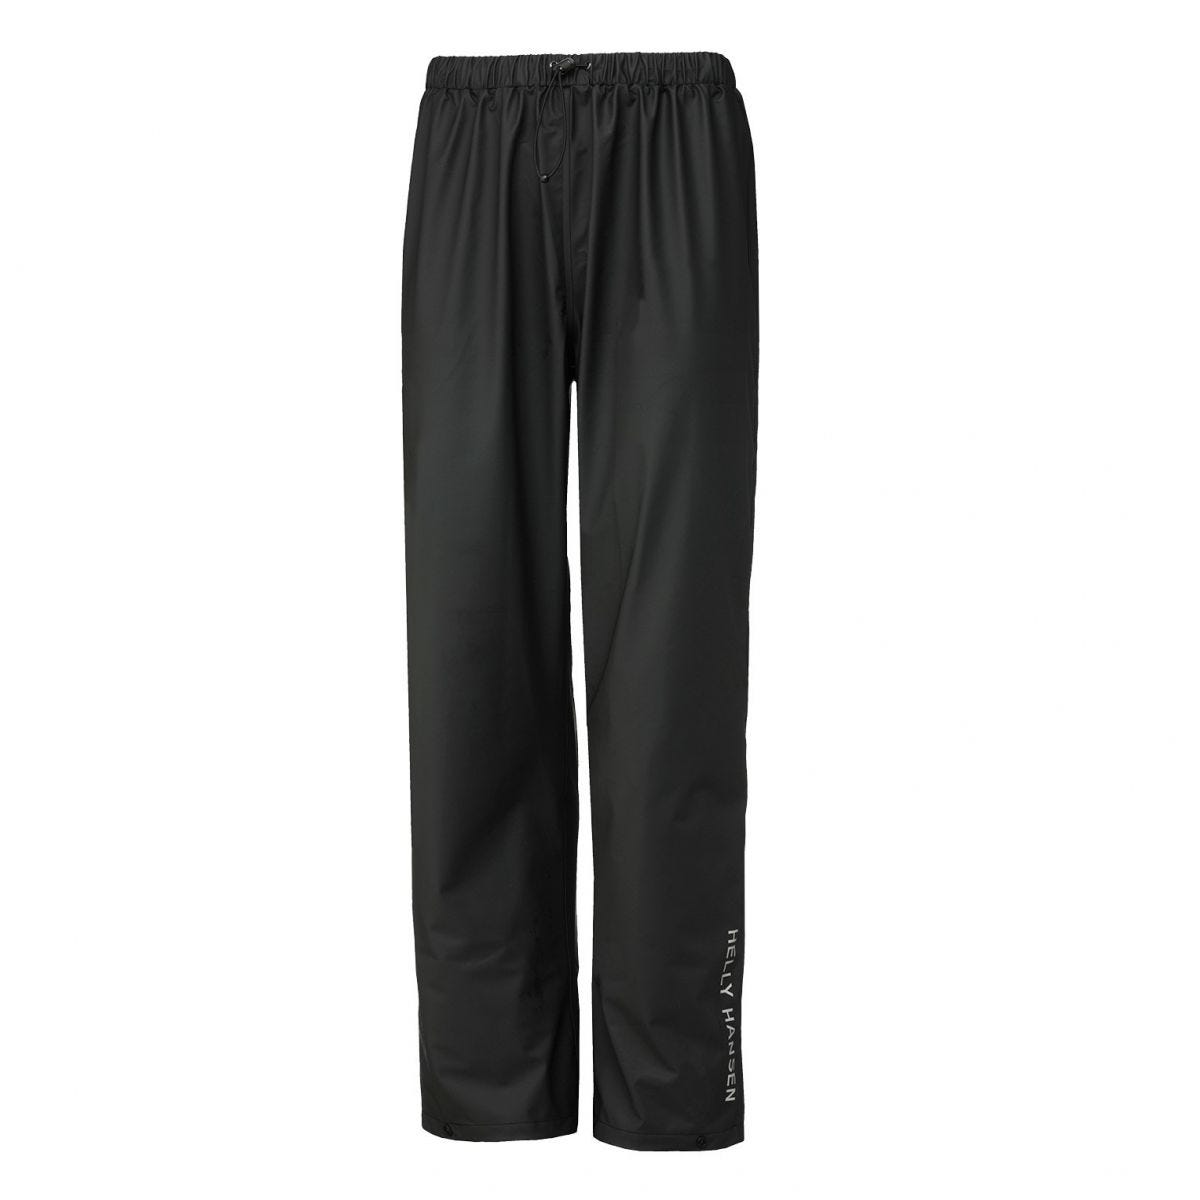 Pantalon de pluie imperméable Voss noir - Helly Hansen - Taille M 0